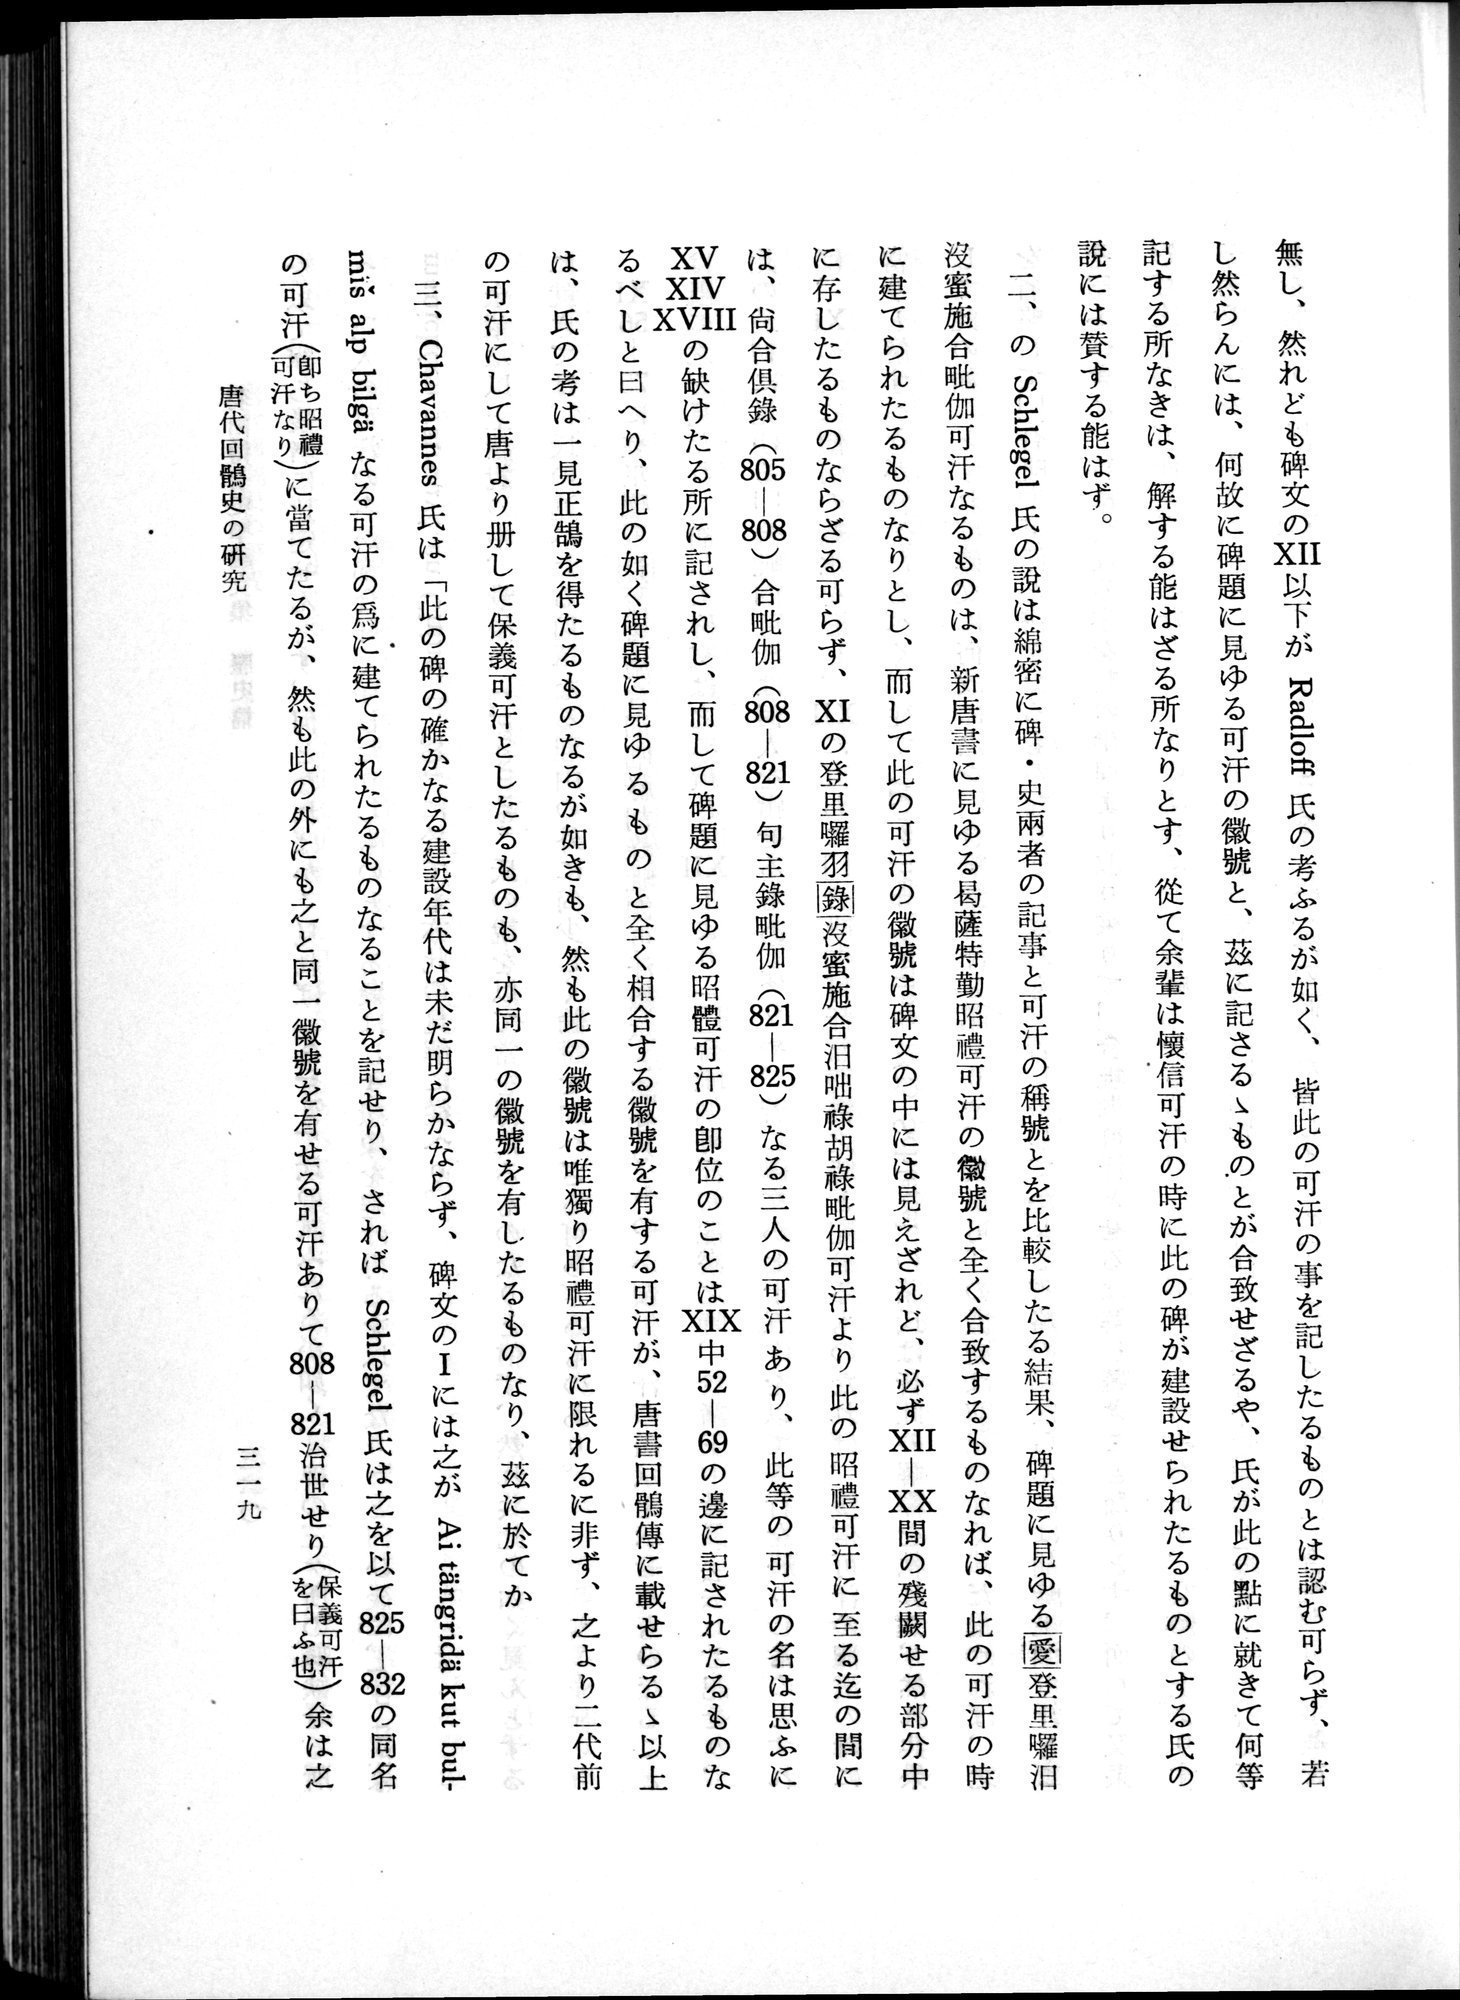 羽田博士史学論文集 : vol.1 / Page 357 (Grayscale High Resolution Image)